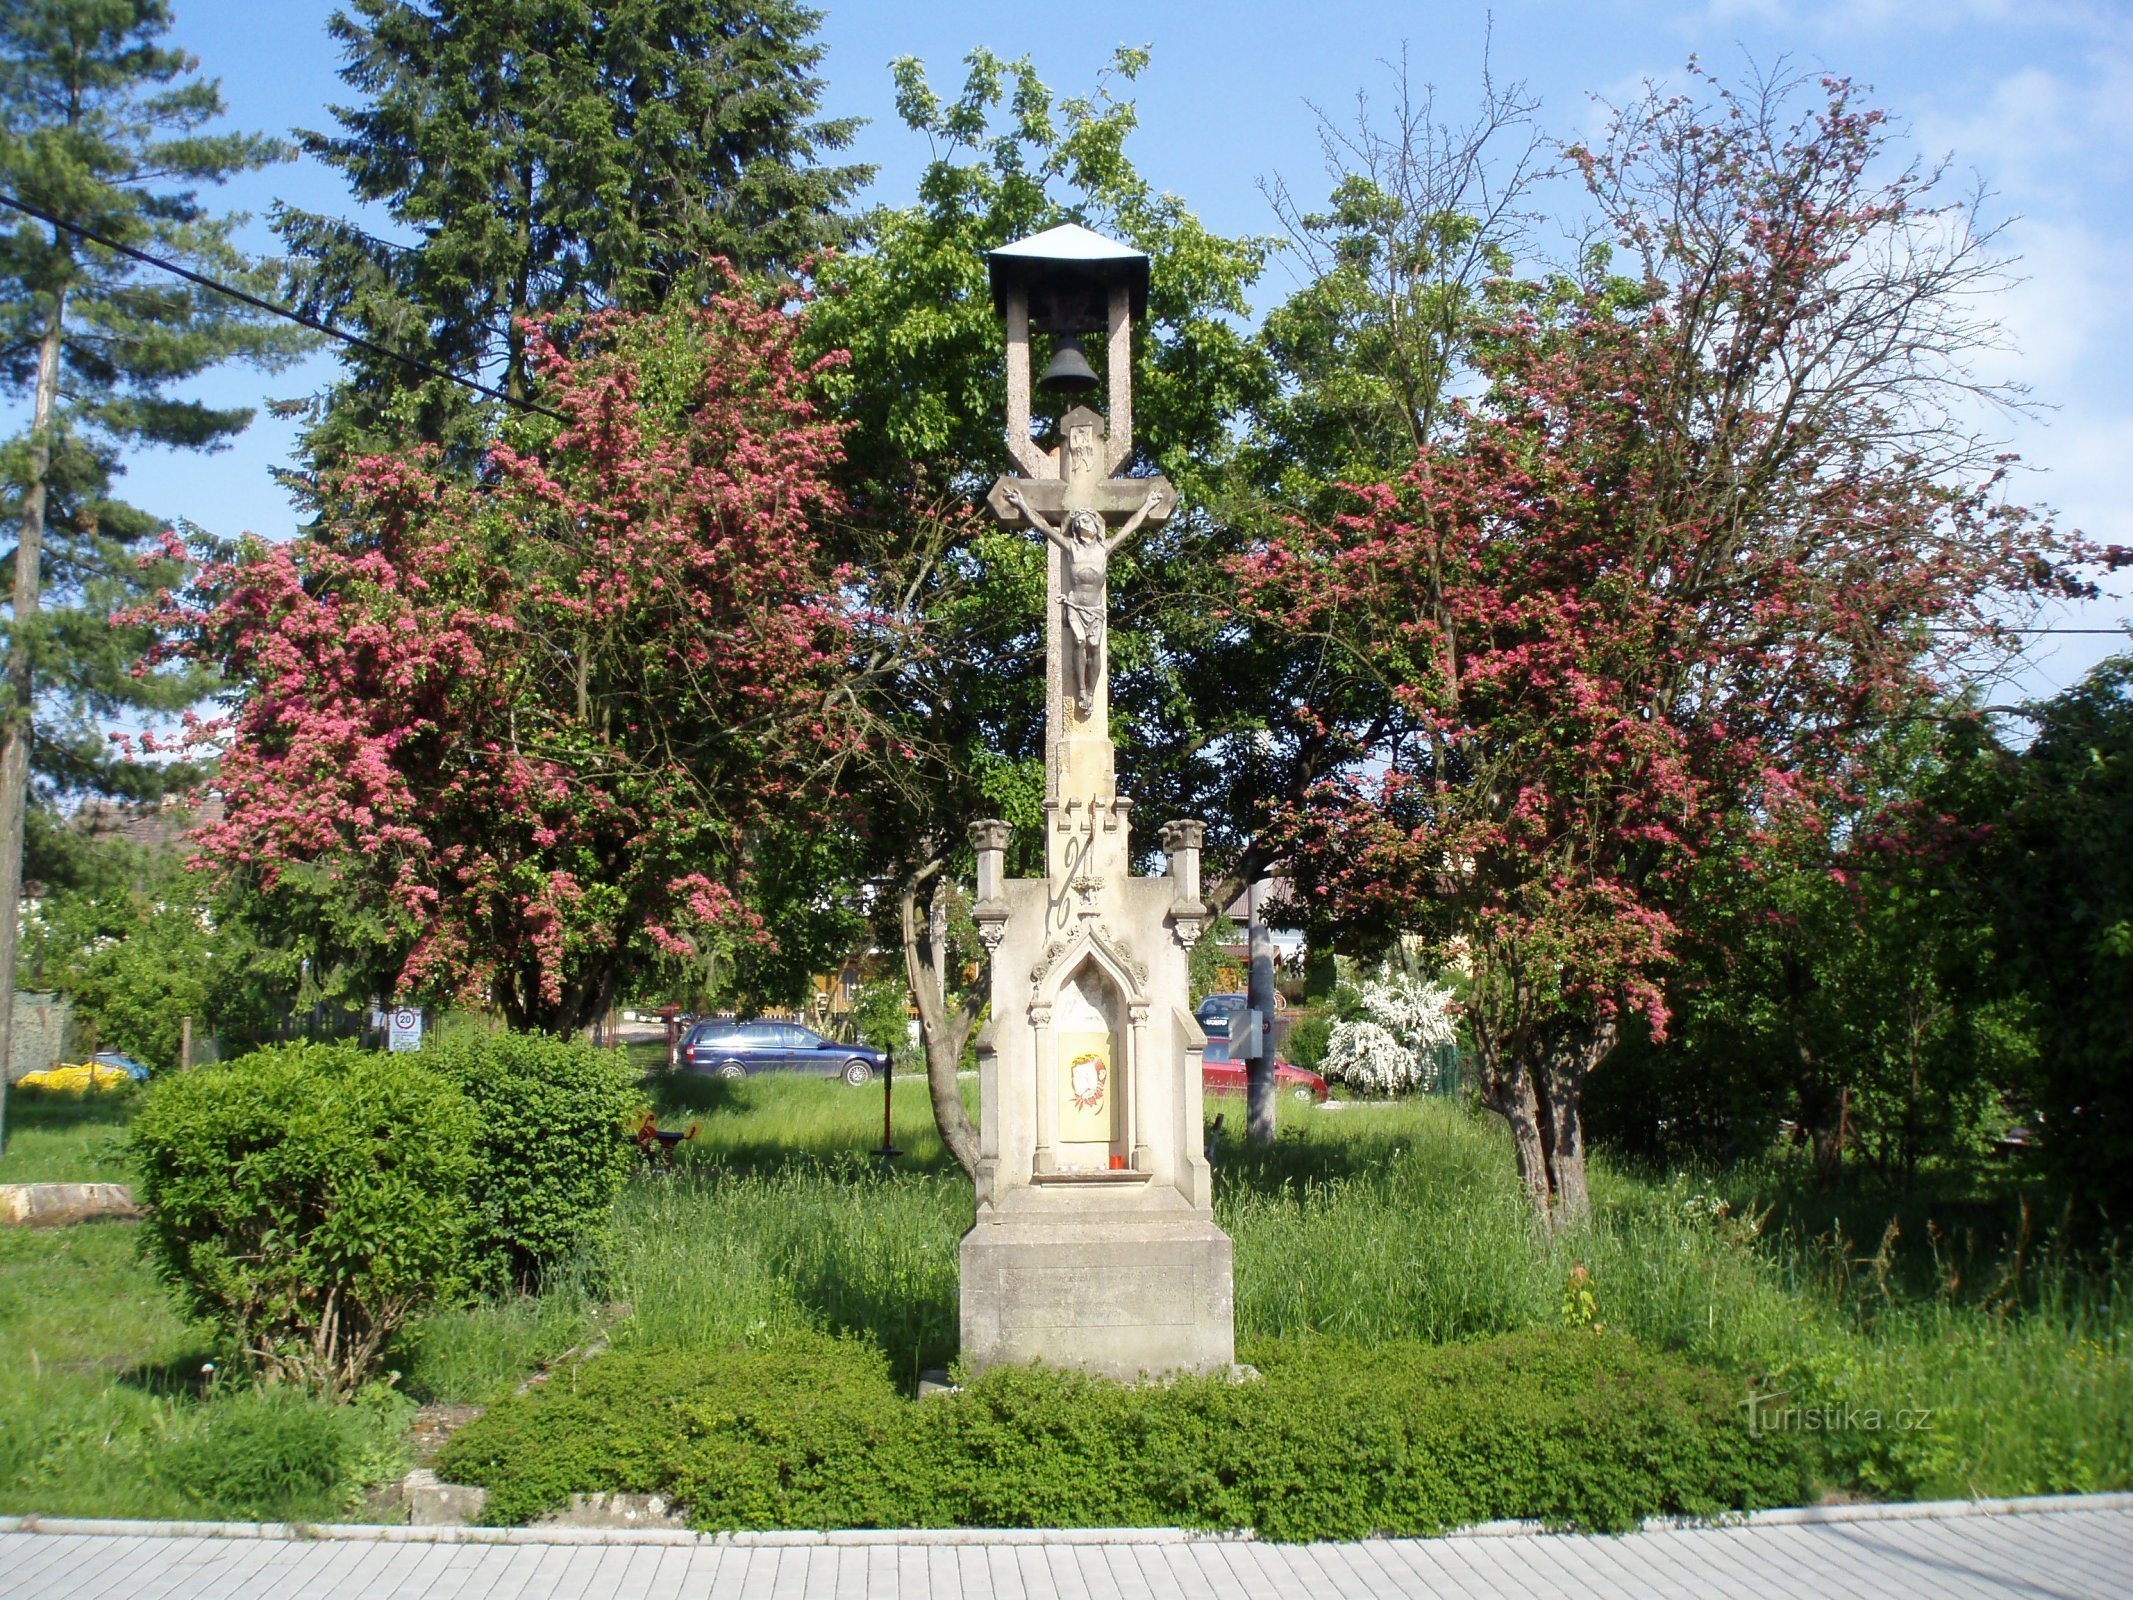 Колокольня с каменным крестом в Роудничке (Градец Кралове, 25.5.2010)